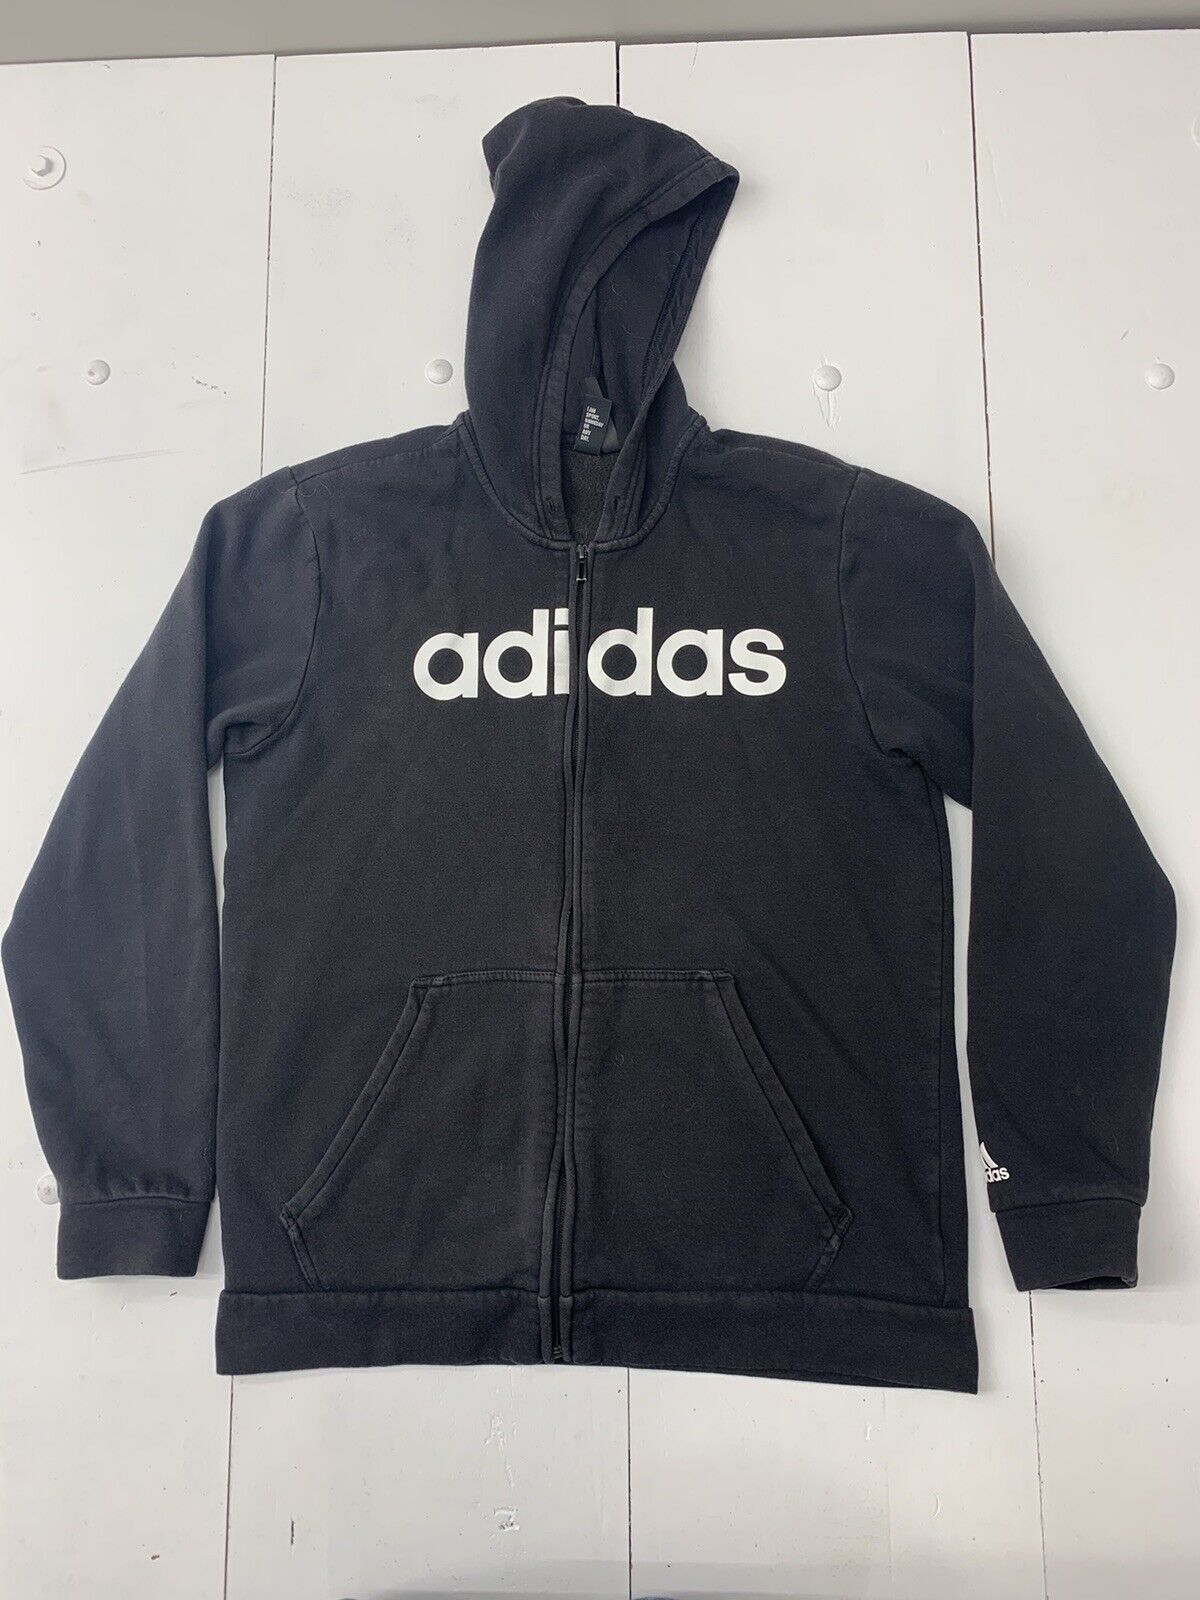 Adidas Mens Black Full zip Jacket Size Large - beyond exchange | Sweatshirts